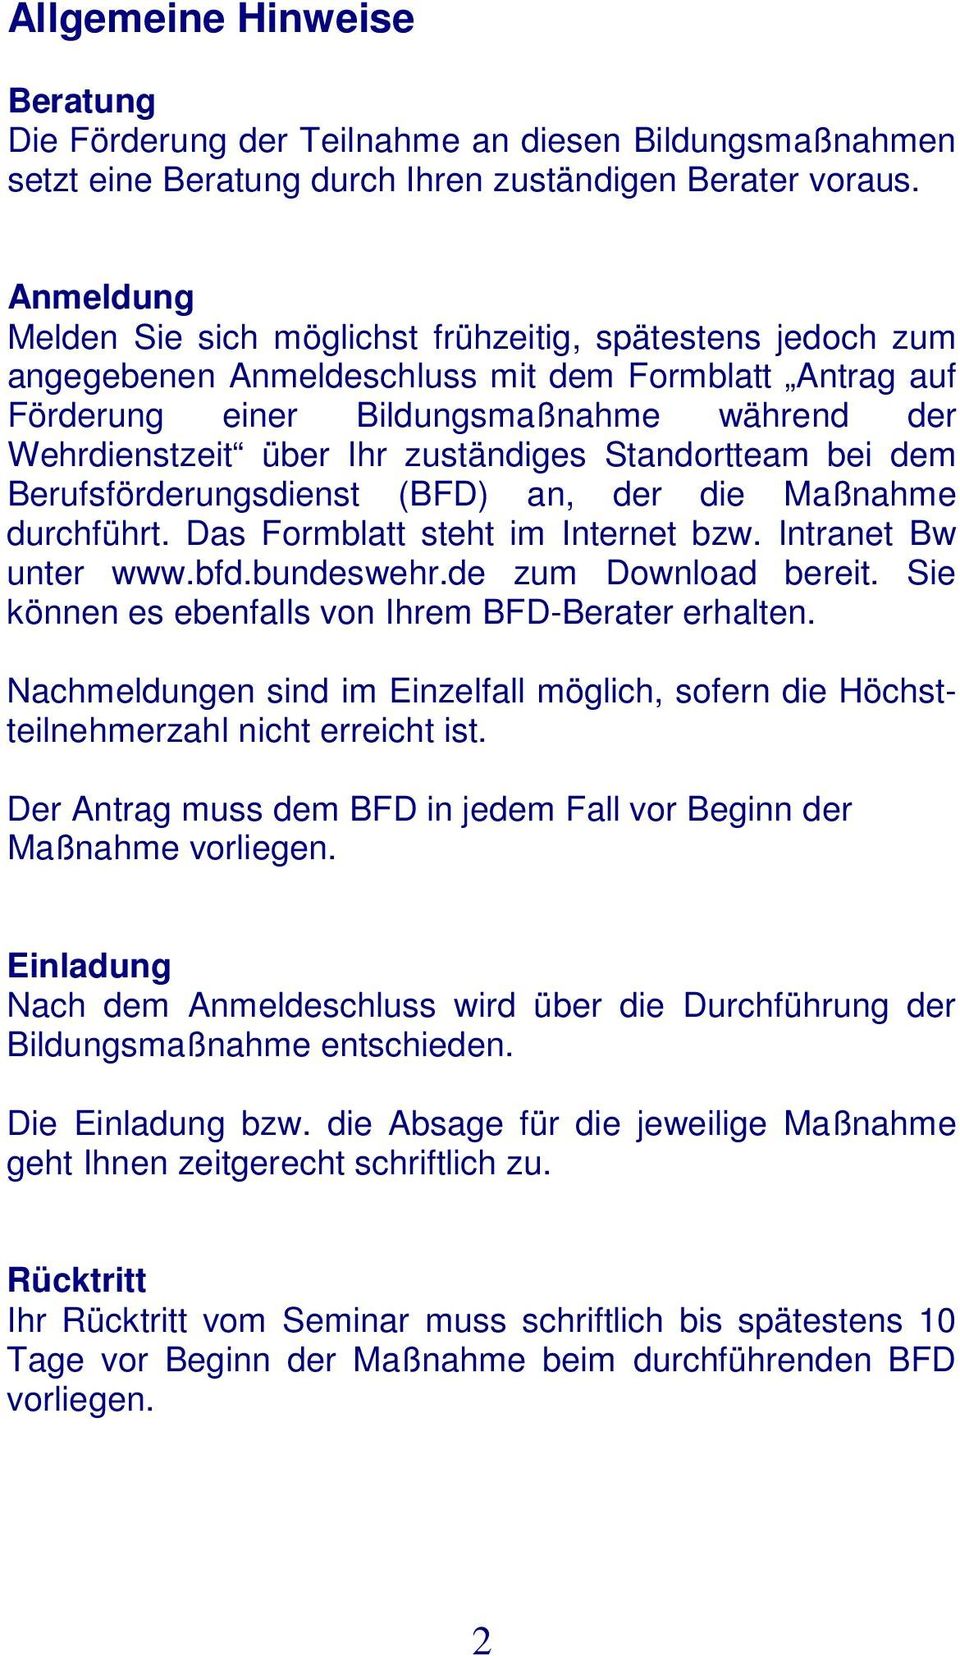 zuständiges Standortteam bei dem Berufsförderungsdienst (BFD) an, der die Maßnahme durchführt. Das Formblatt steht im Internet bzw. Intranet Bw unter www.bfd.bundeswehr.de zum Download bereit.